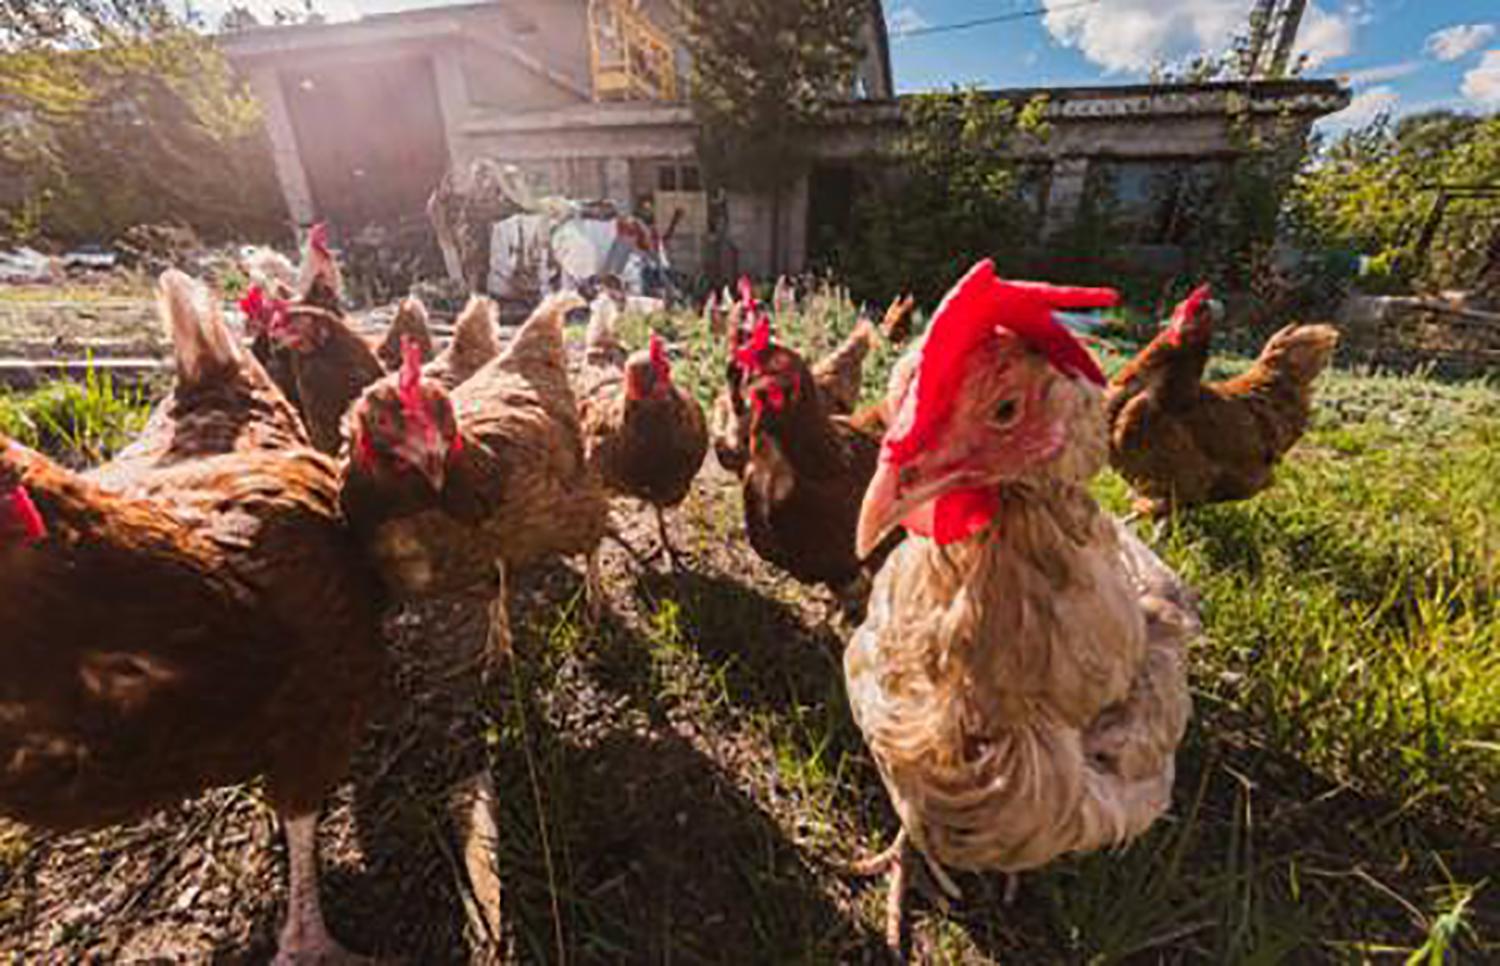 Įspėja: už tvoros gali tykoti paukščių gripas / Paukščių gripas – grėsmė naminiams paukščiams.